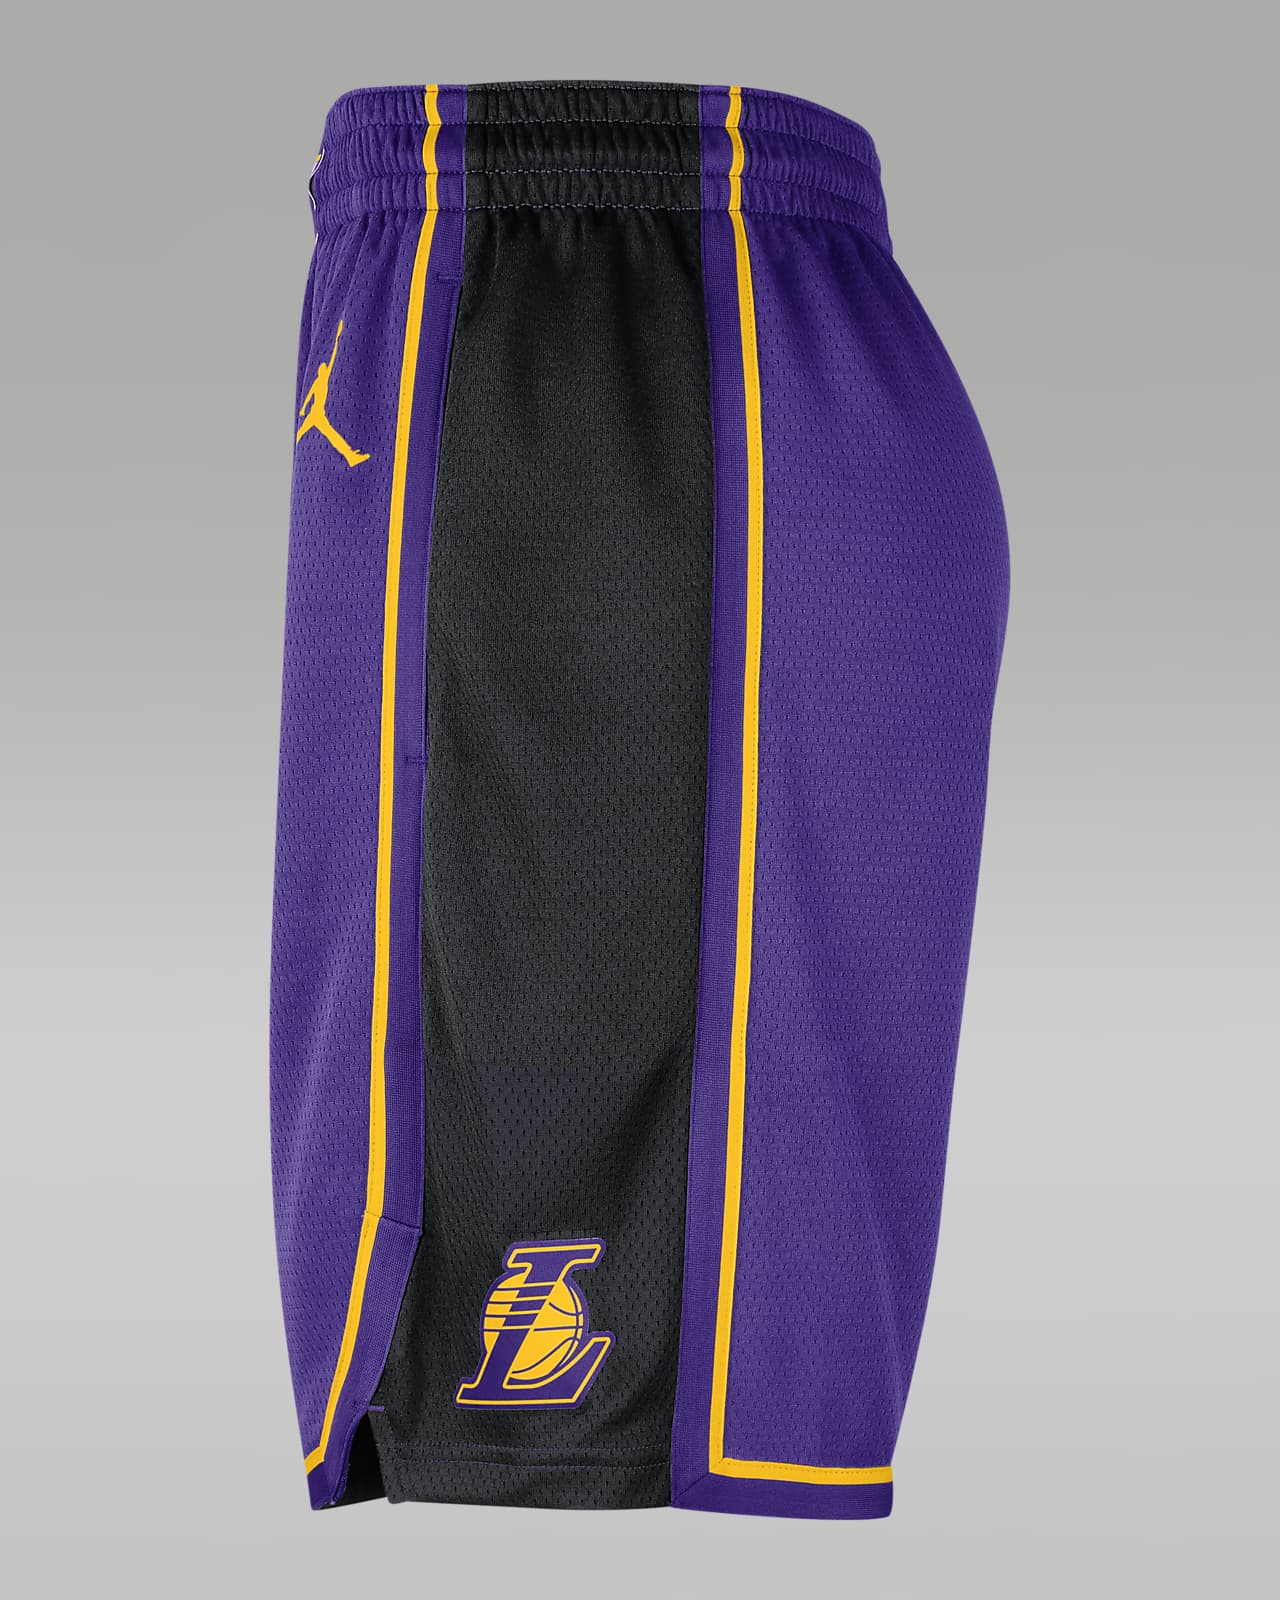 Los Angeles Lakers Statement Edition Pantalón corto de baloncesto